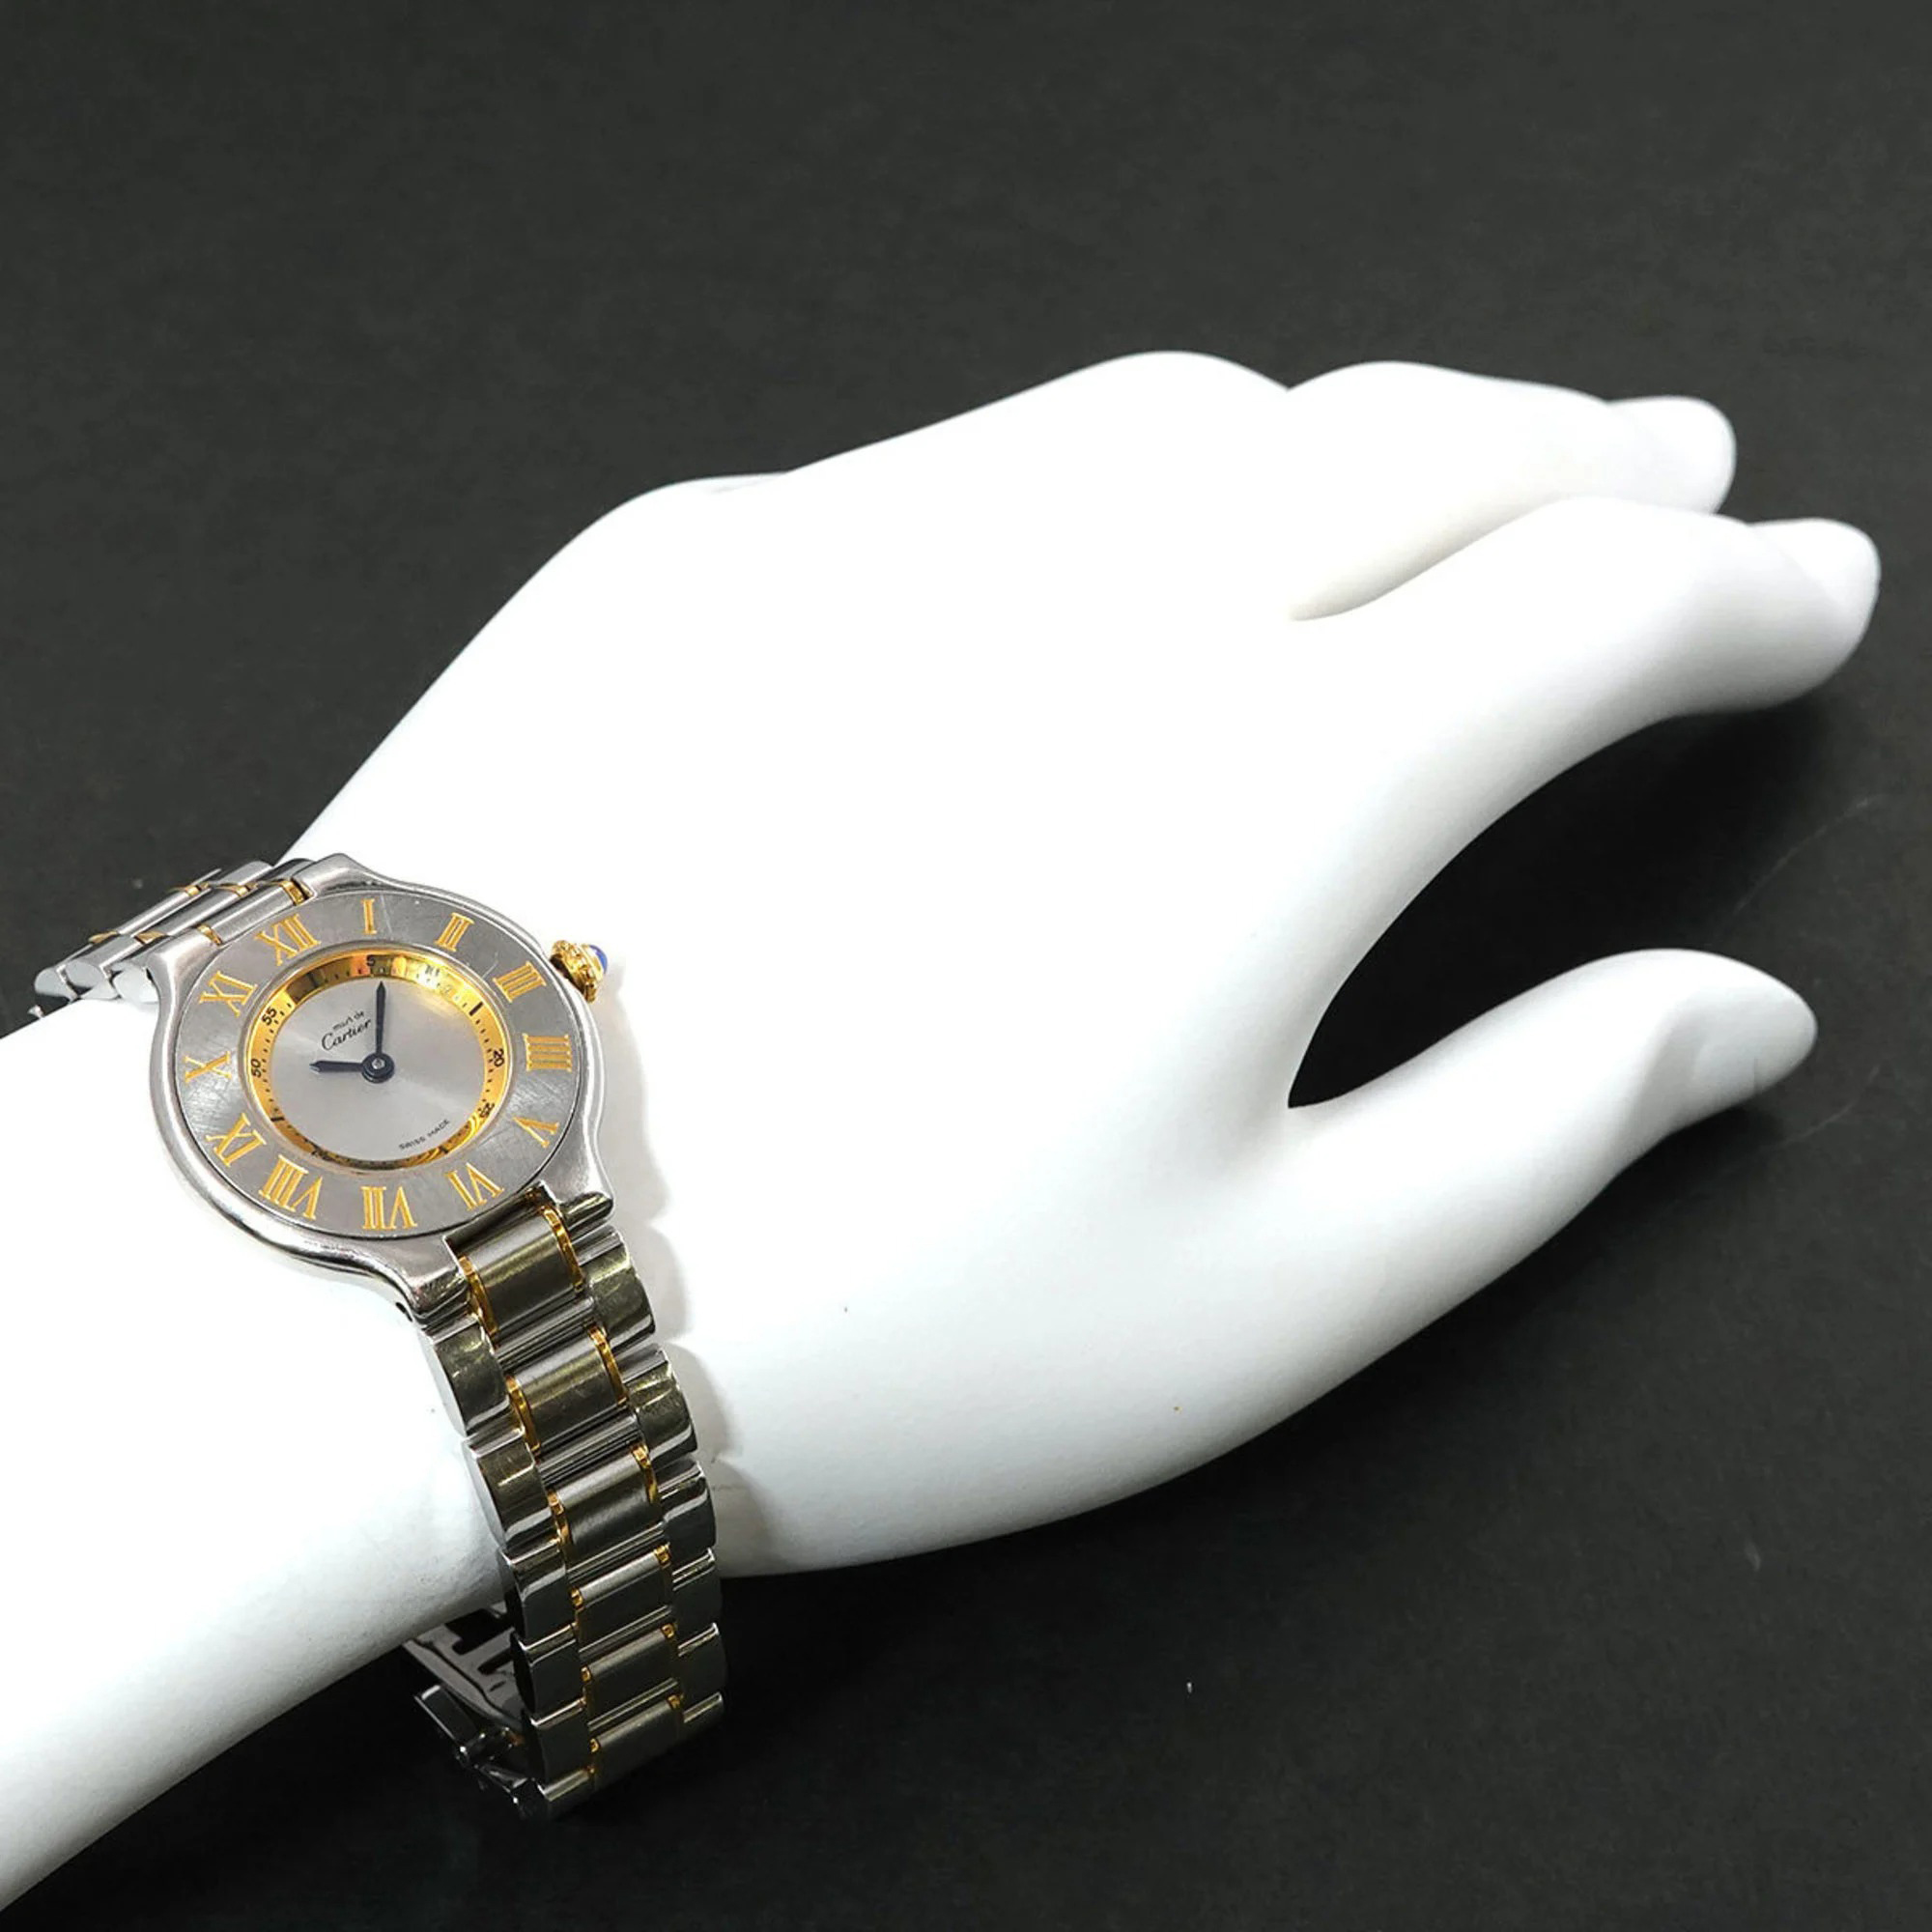 Cartier Silver  Stainless Steel Must 21 De Cartier W10073R6 Quartz Women's Wristwatch 28 Mm